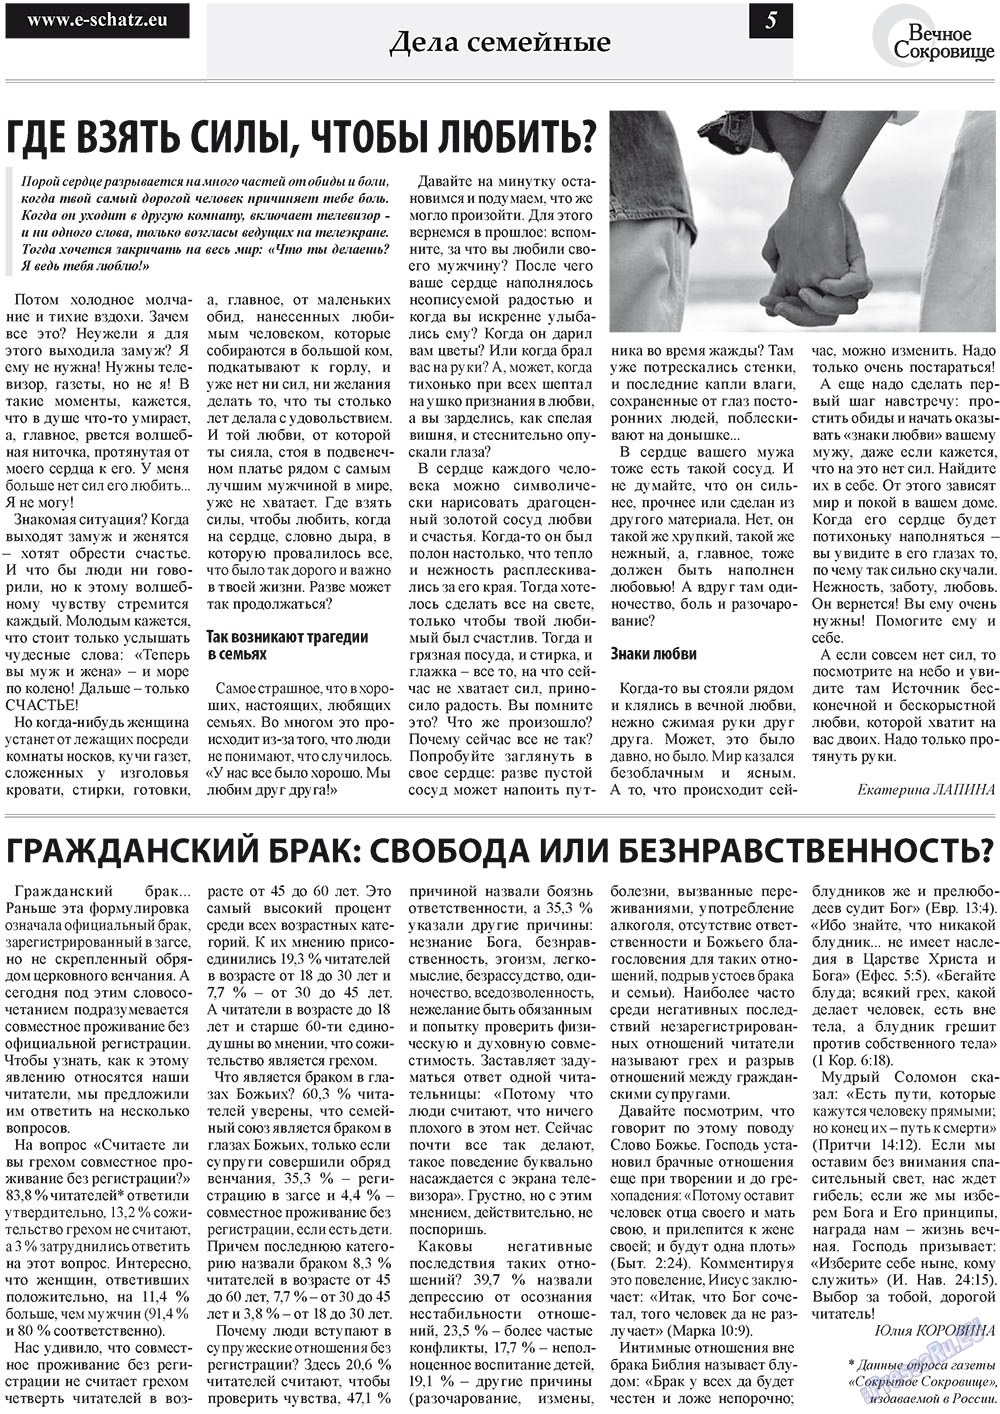 Вечное сокровище (газета). 2011 год, номер 5, стр. 5